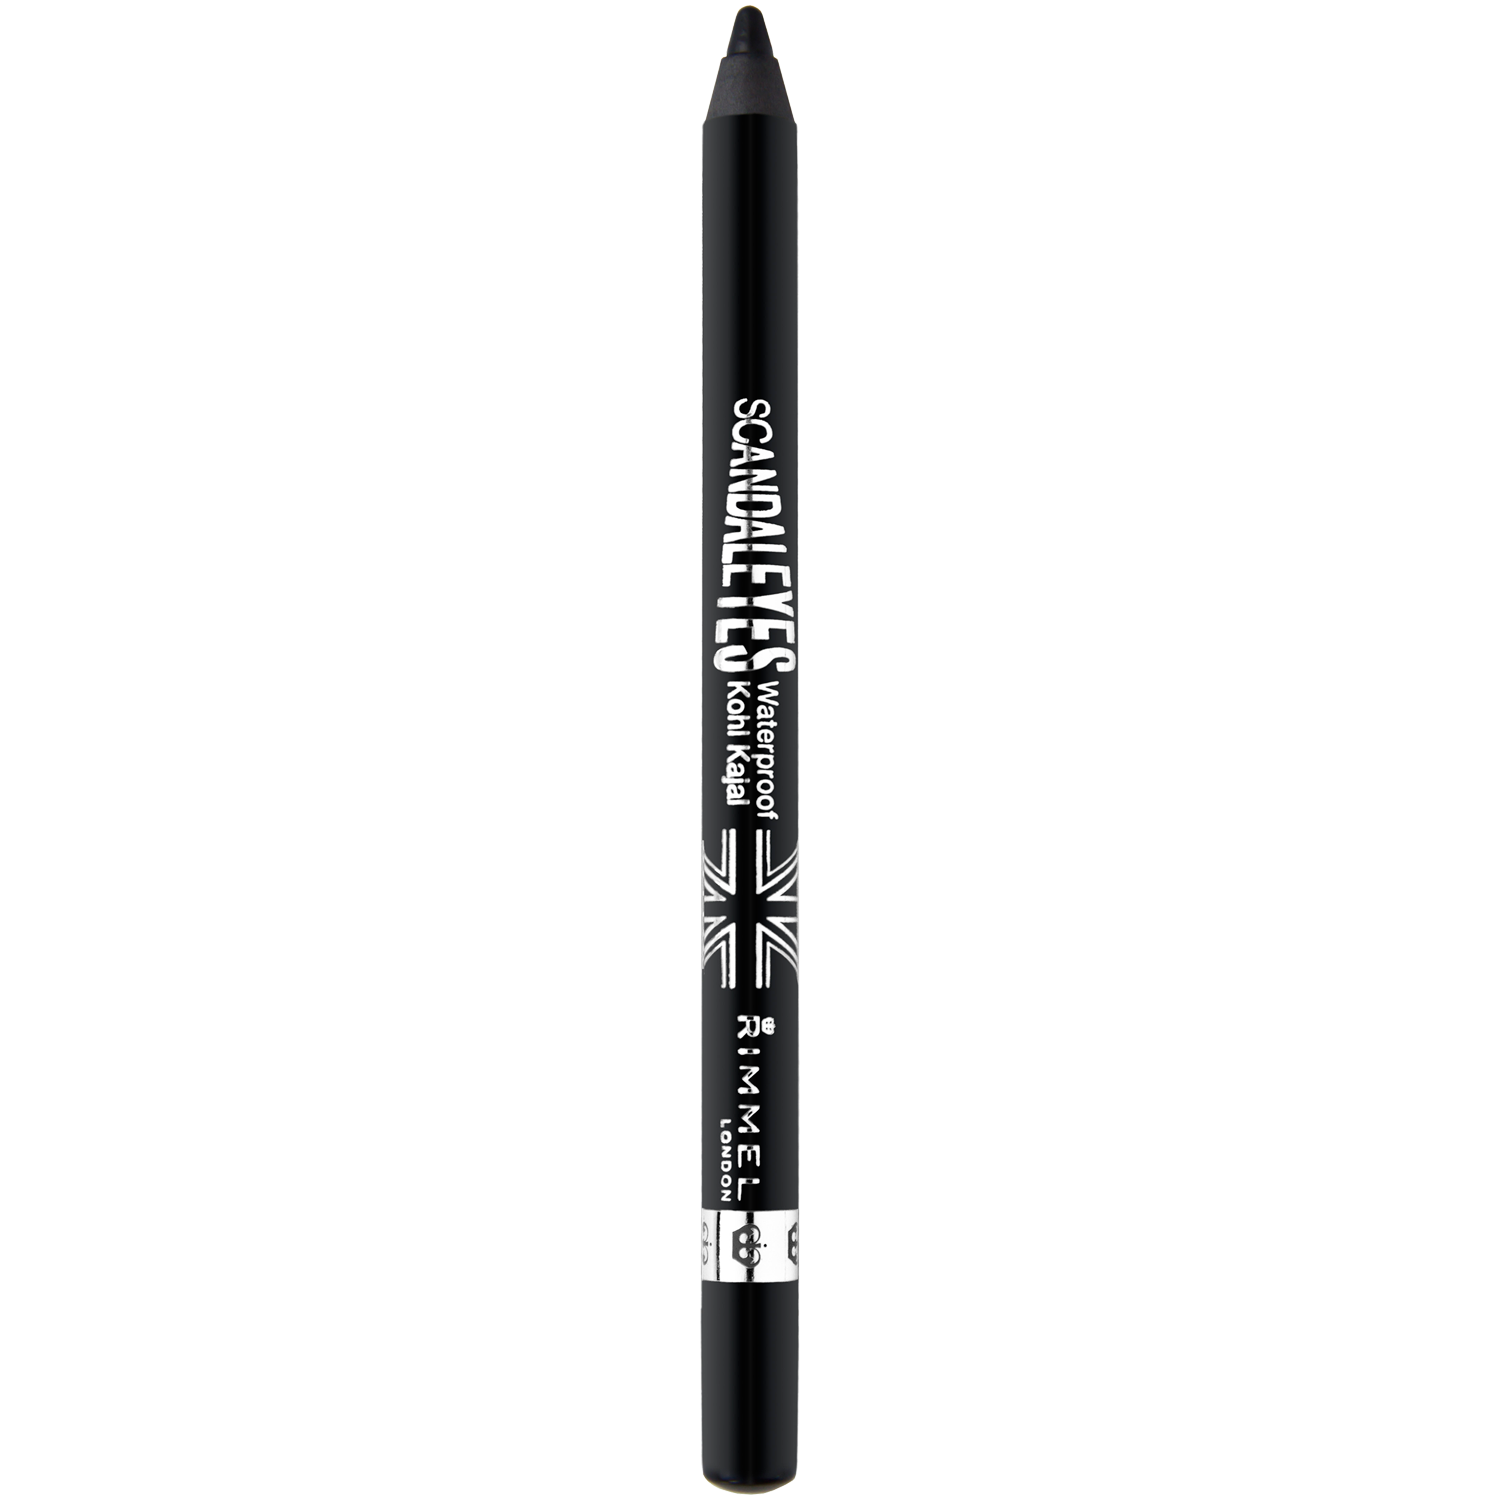 Rimmel Scandal Eyes водостойкий карандаш для глаз черный 001, 1,2 г